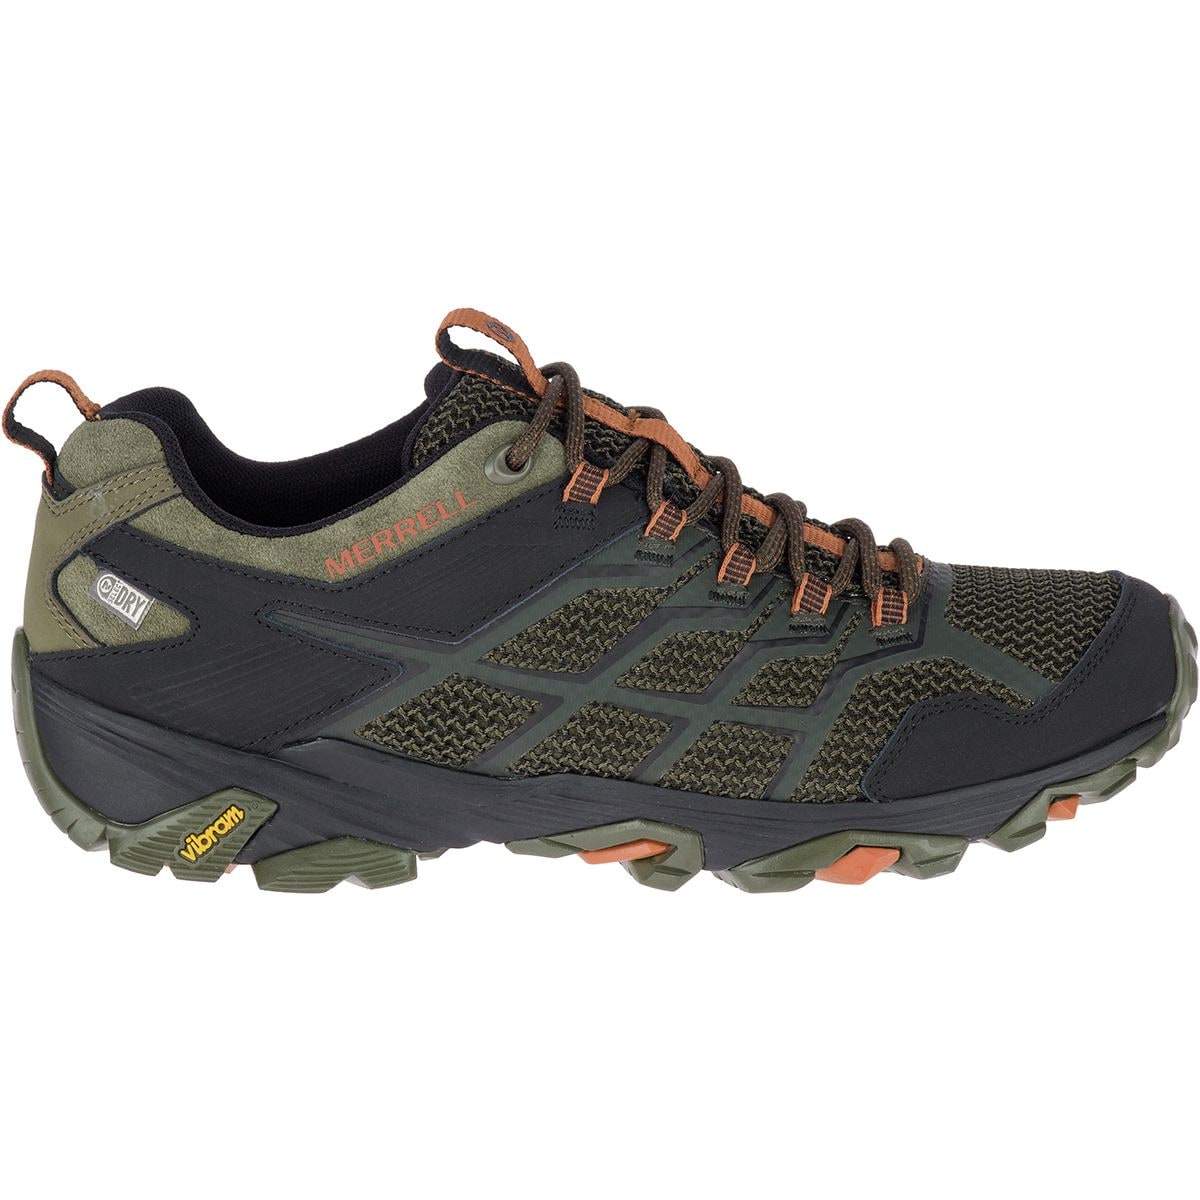 Merrell Moab FST 2 Waterproof Hiking Boot - Men's - Footwear